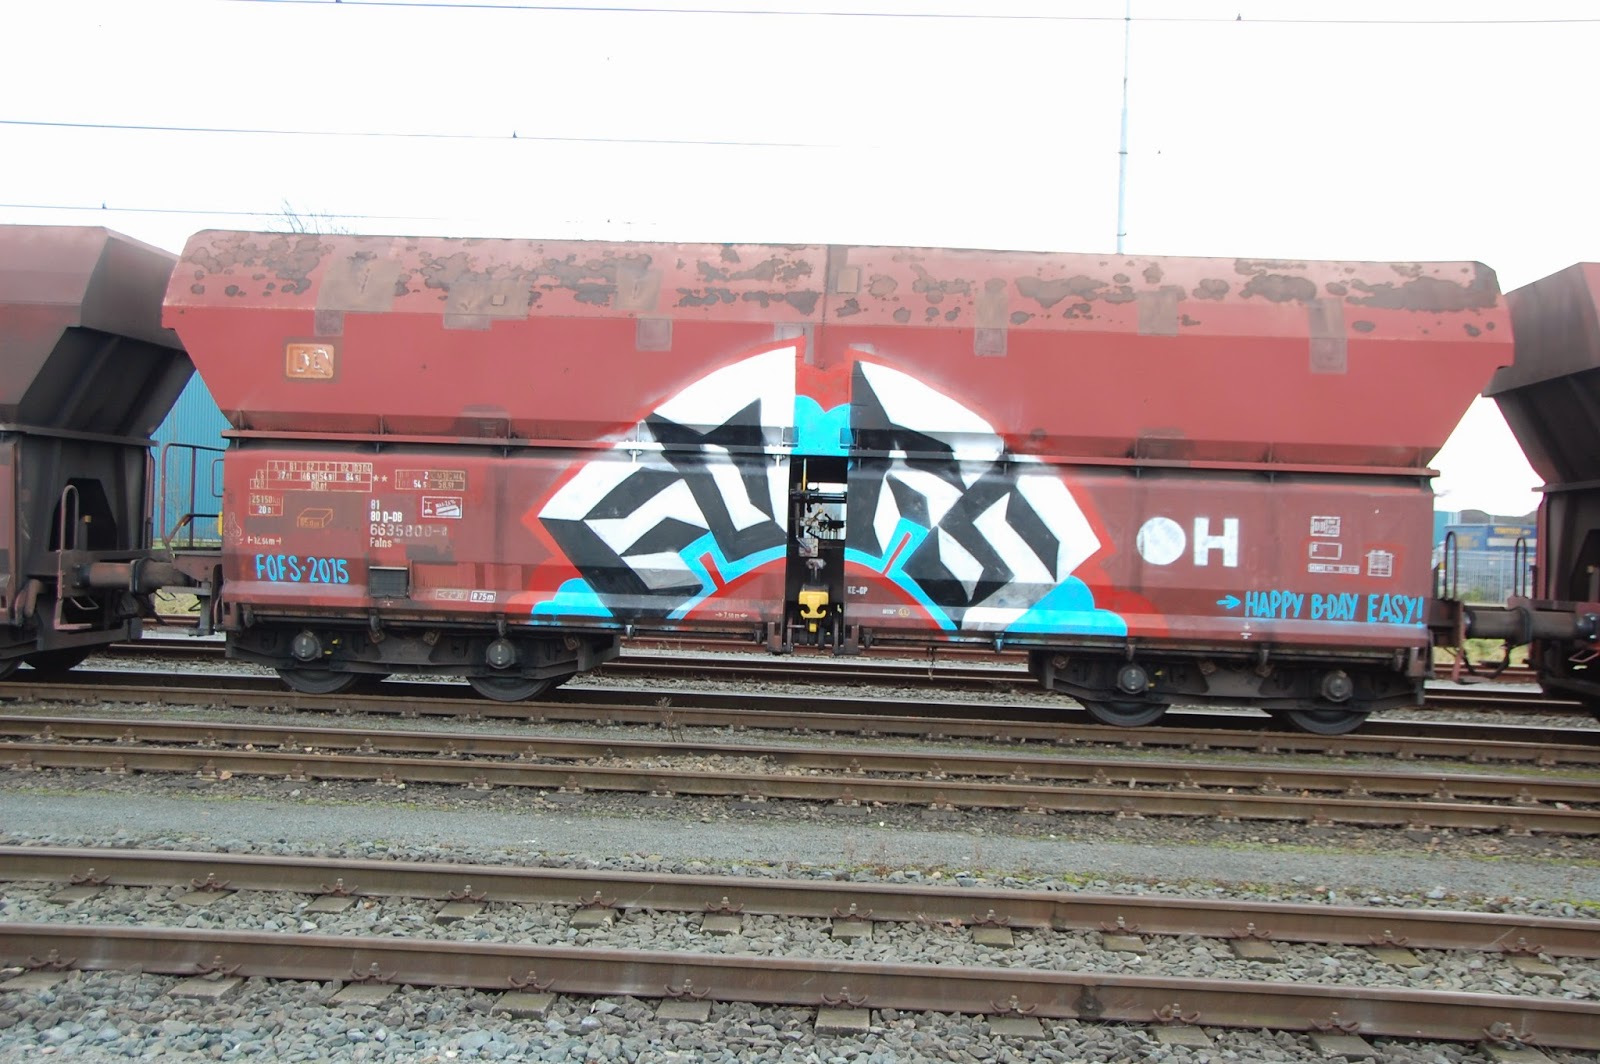 graffiti-amsterdam-fofs